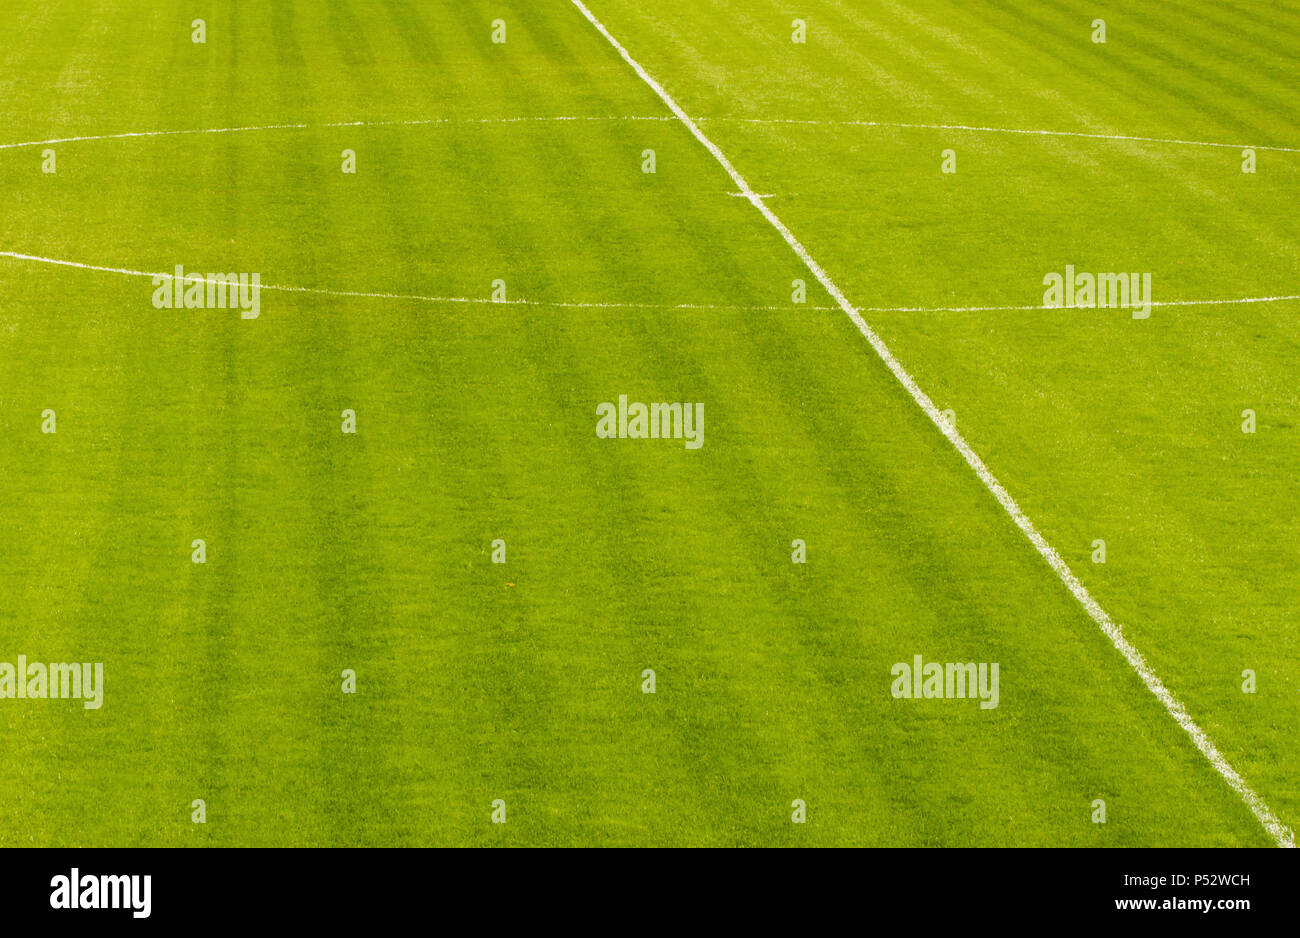 Image en gros plan d'un terrain de soccer de l'herbe verte naturelle Banque D'Images